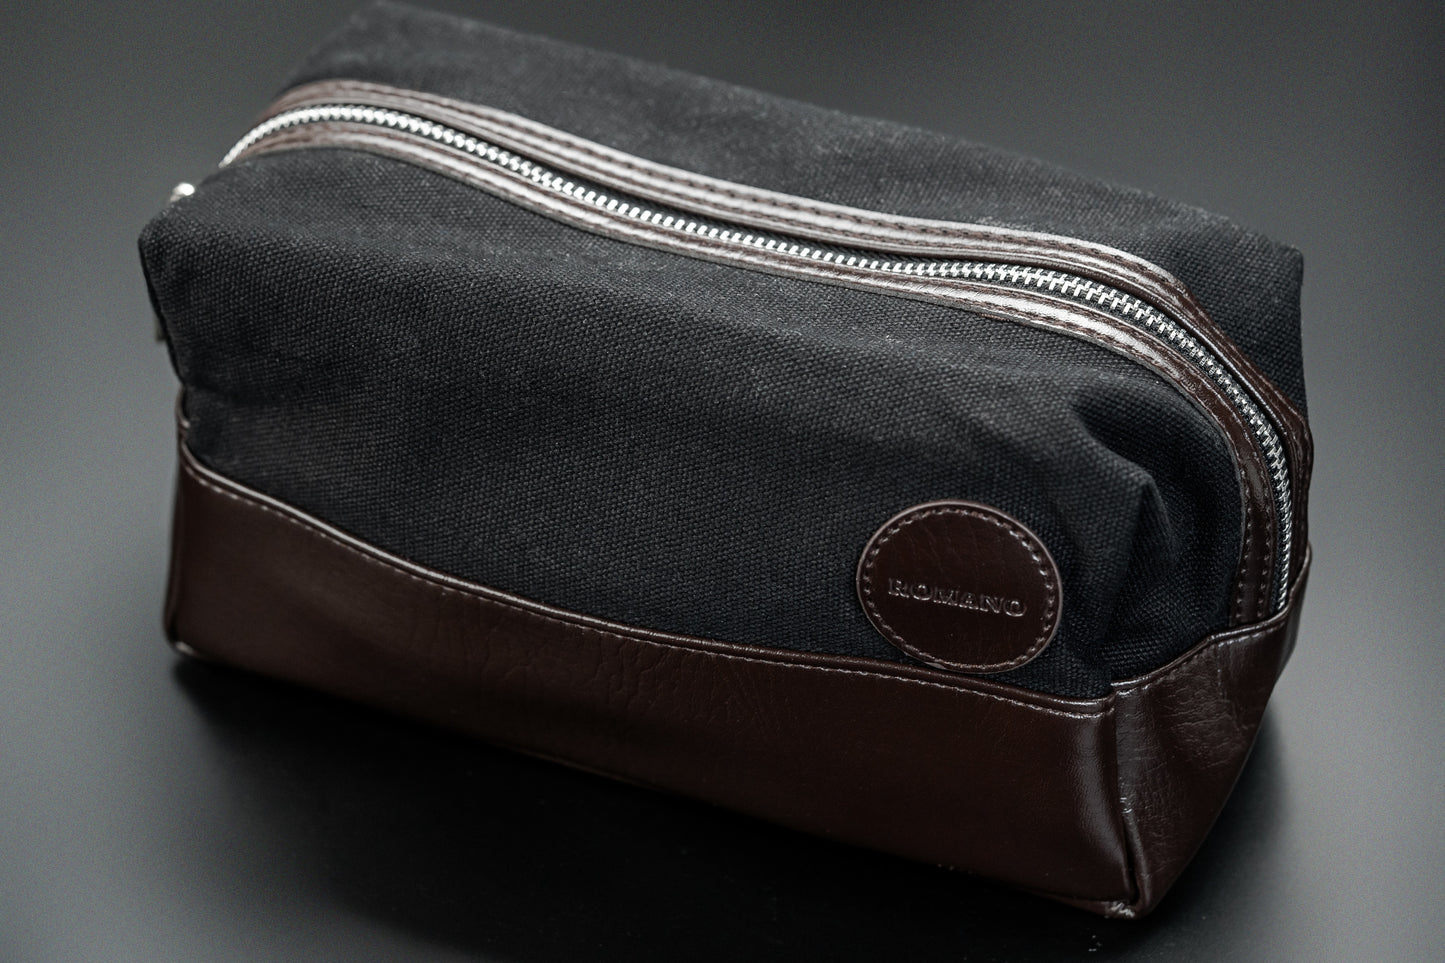 The Loculus Premium Travel Bag